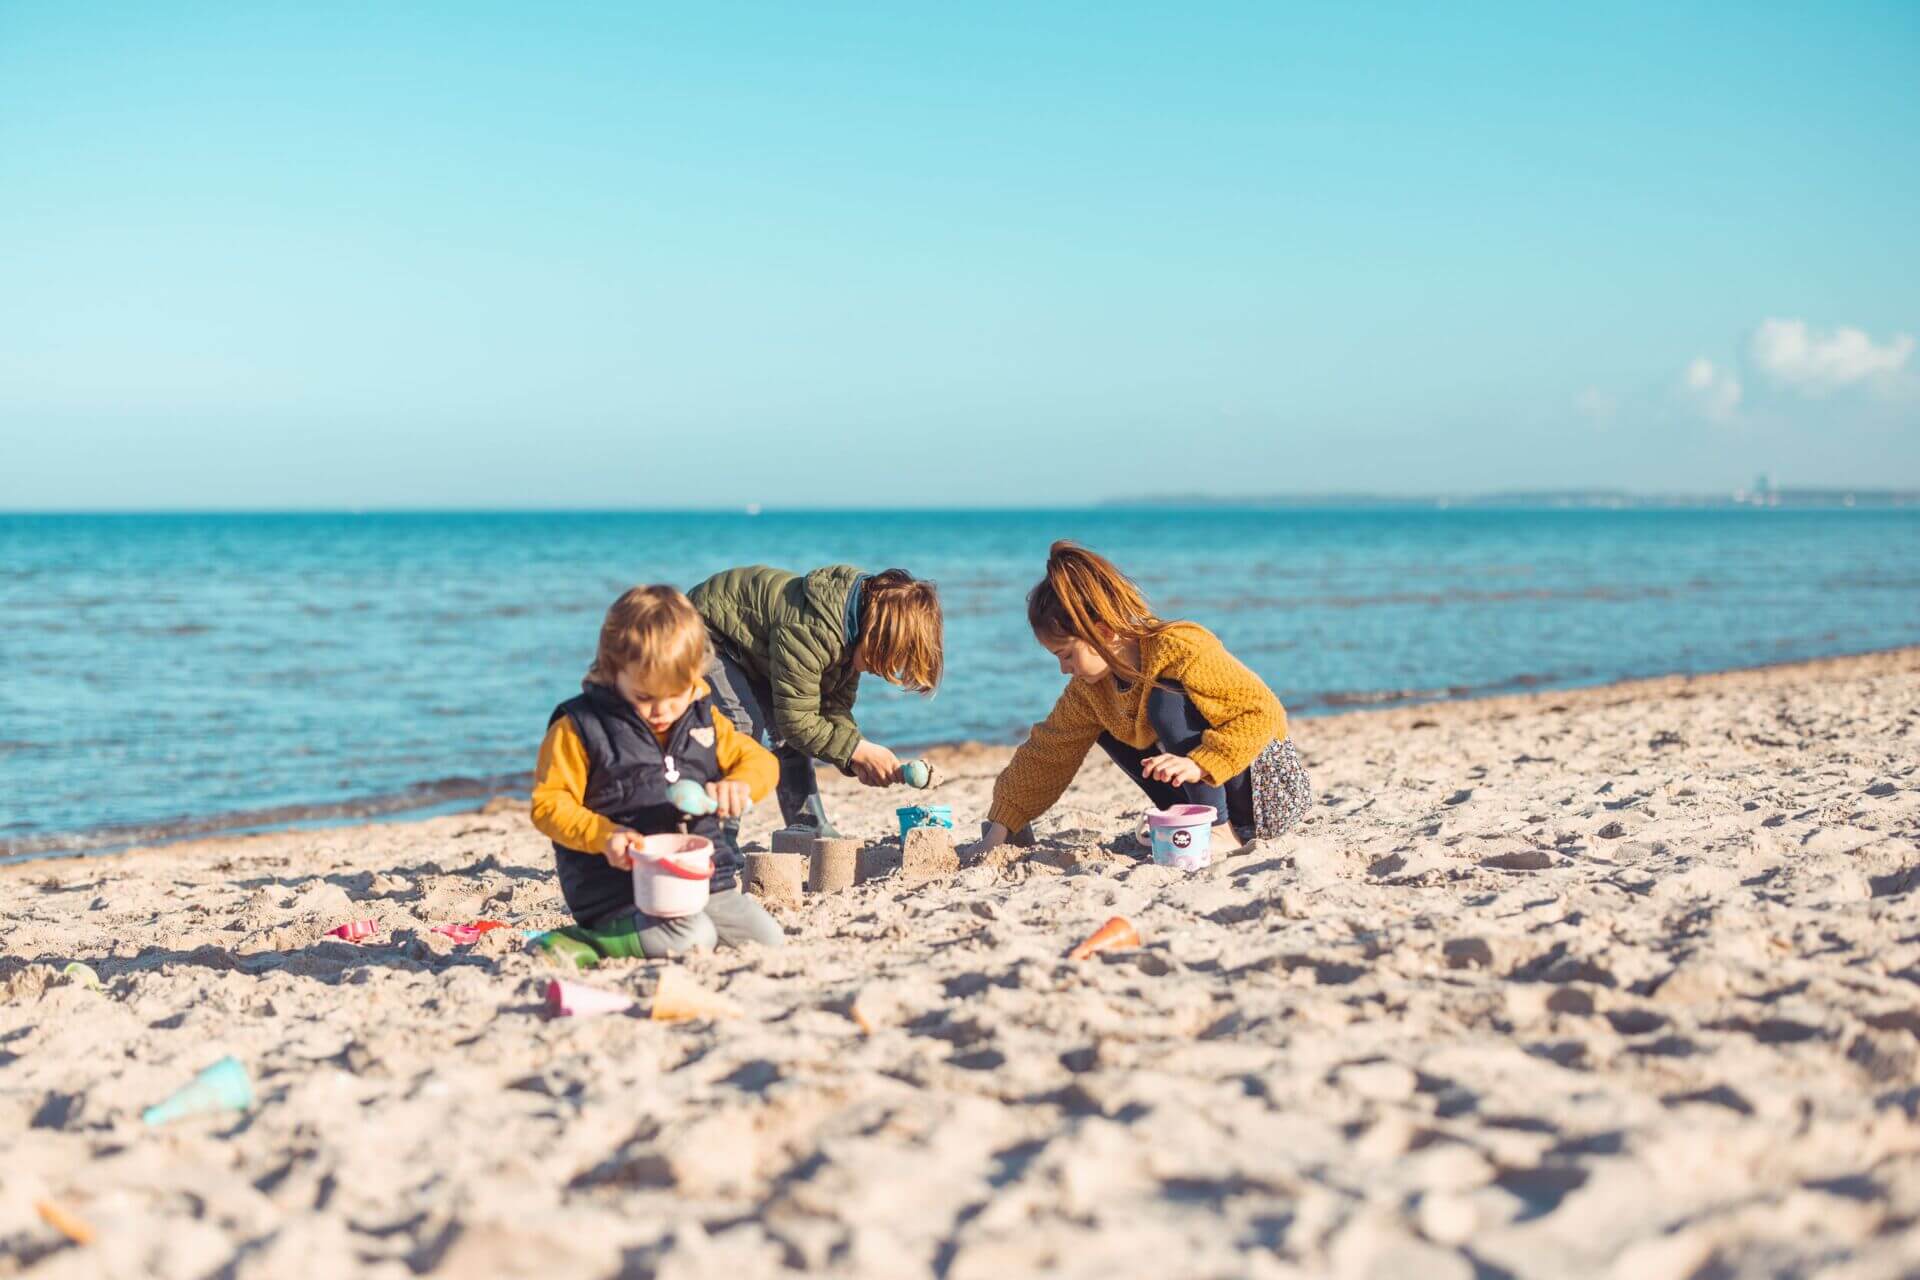 Drei Kinder spielen bei sonnigem Wetter am Ostseestrand im Sand. Das Kind links trägt eine grüne Jacke und ist beschäftigt, Sand in einen Eimer zu füllen, während das mittlere Kind in einer braunen Jacke hilft, eine Sandburg zu bauen. Das Kind rechts im g